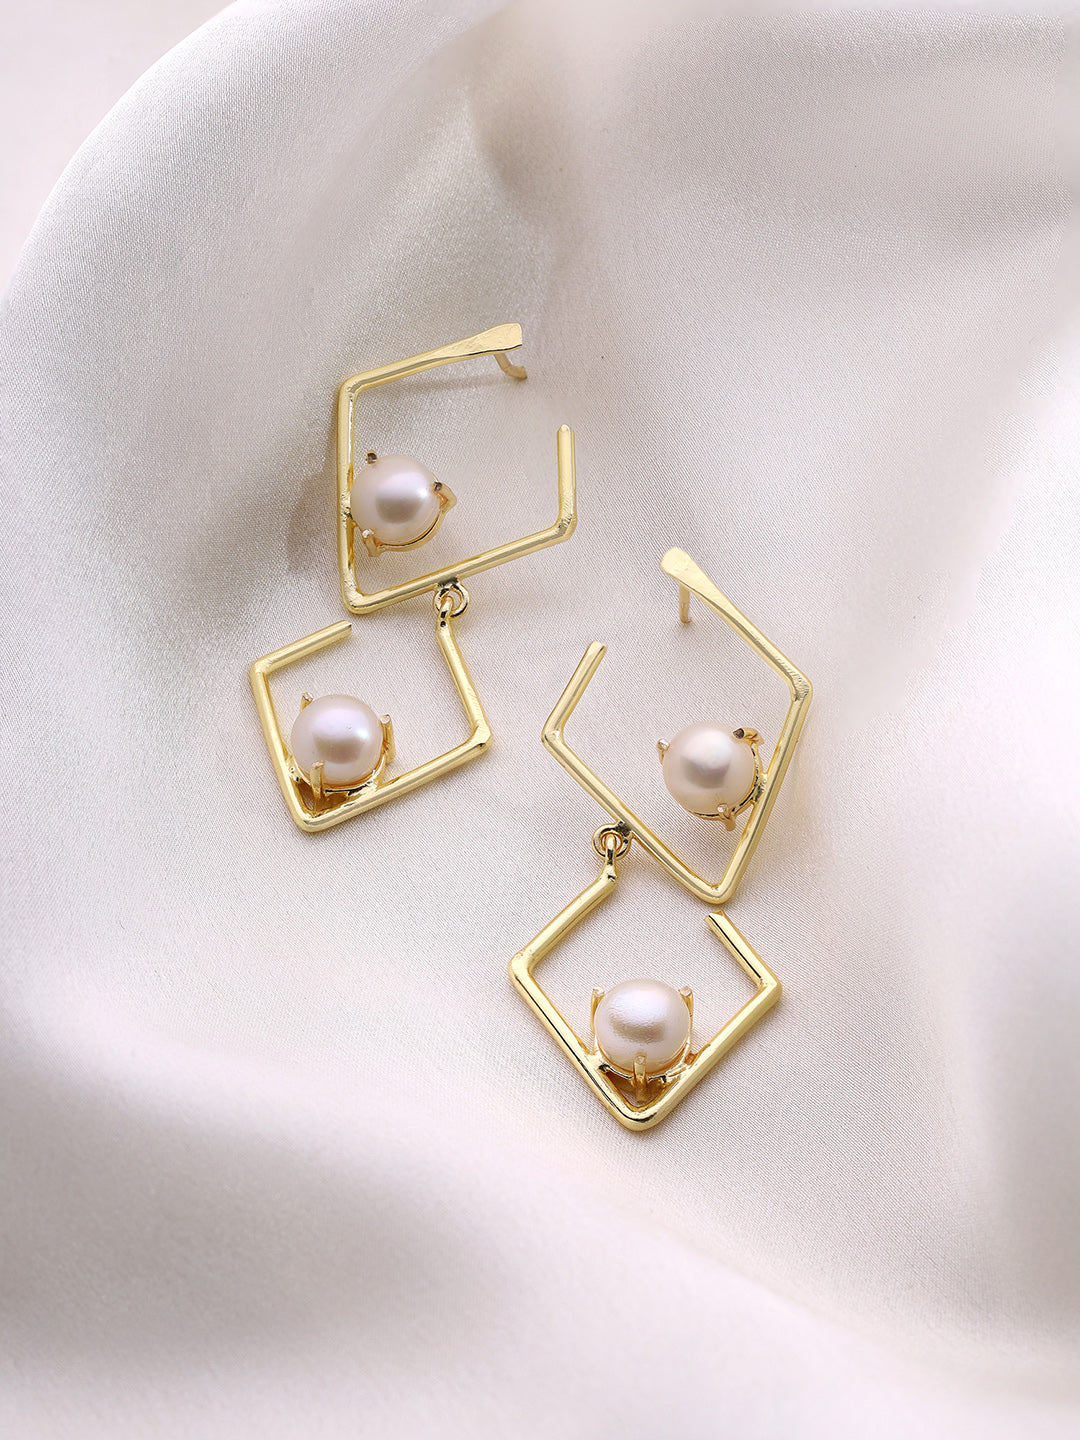 Priyaasi Geometric Shape Pearl Drop Earrings